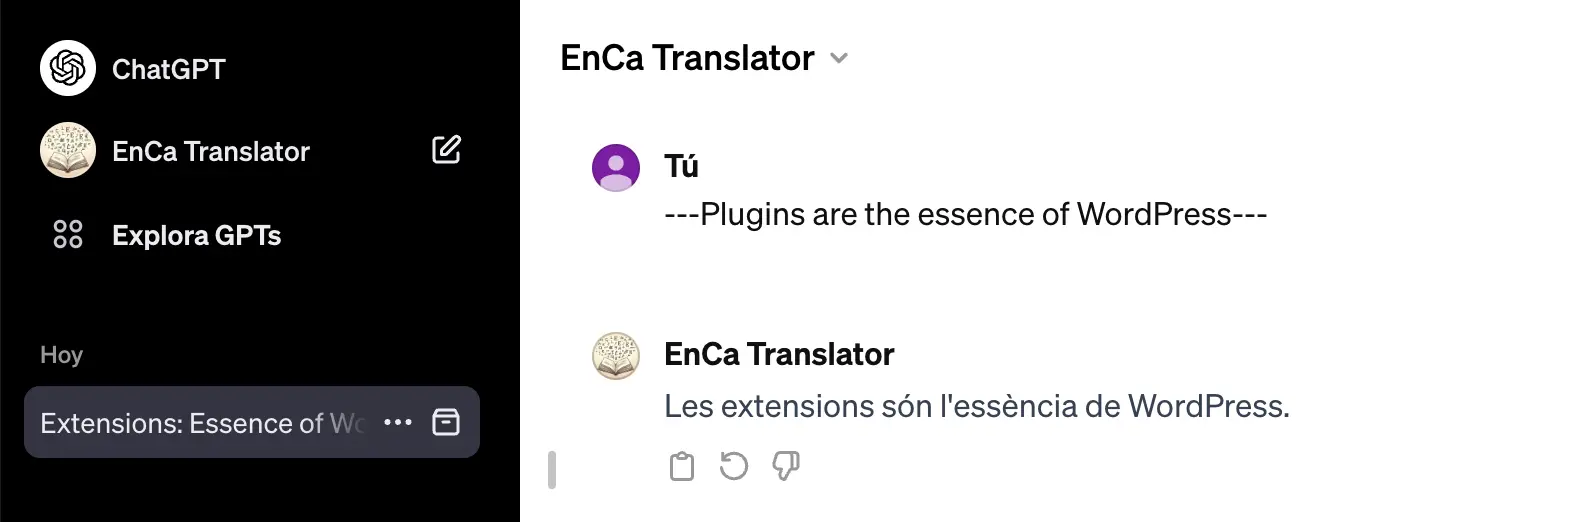 ChatGPT Assistant translator example translation